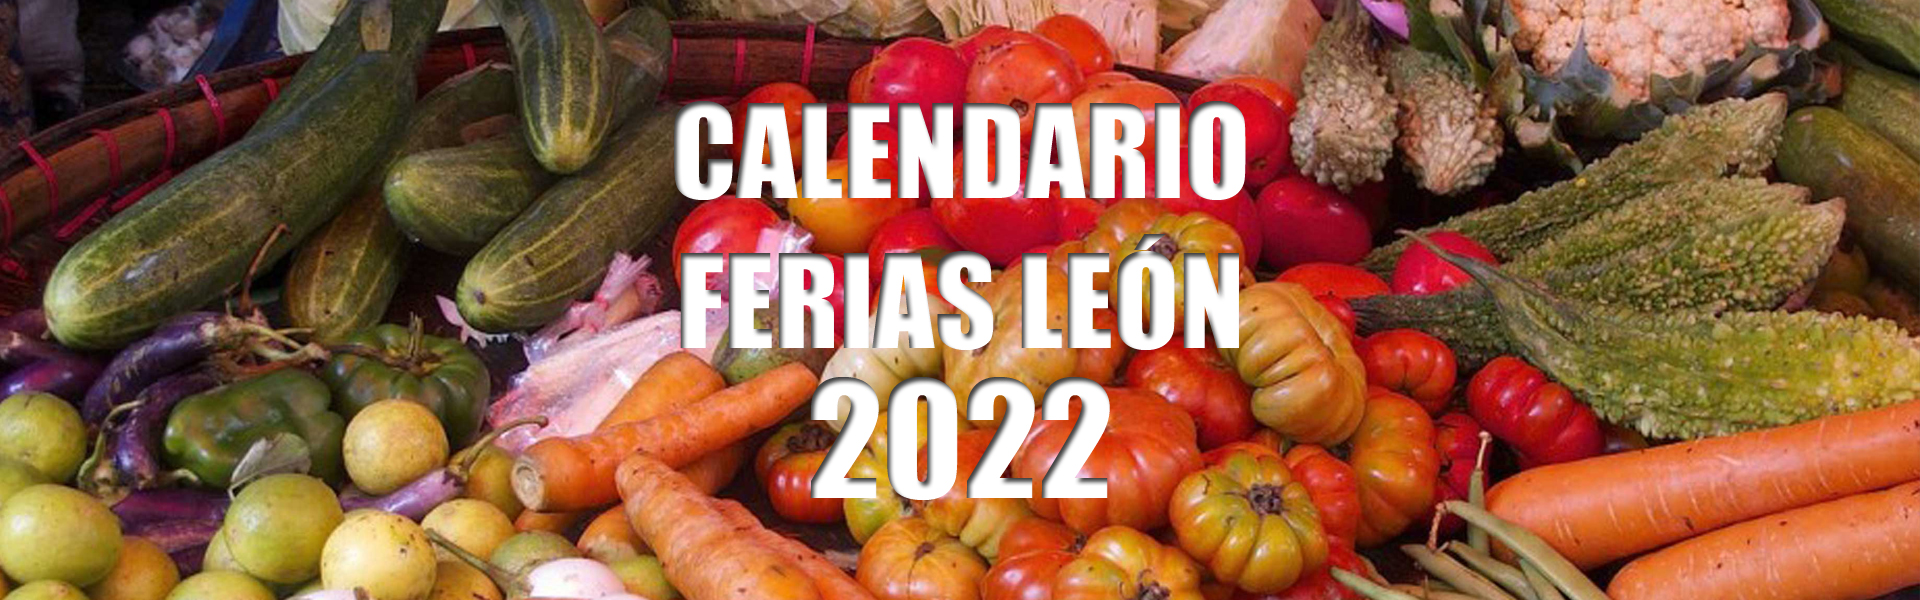 calendario-ferias-leon-2022